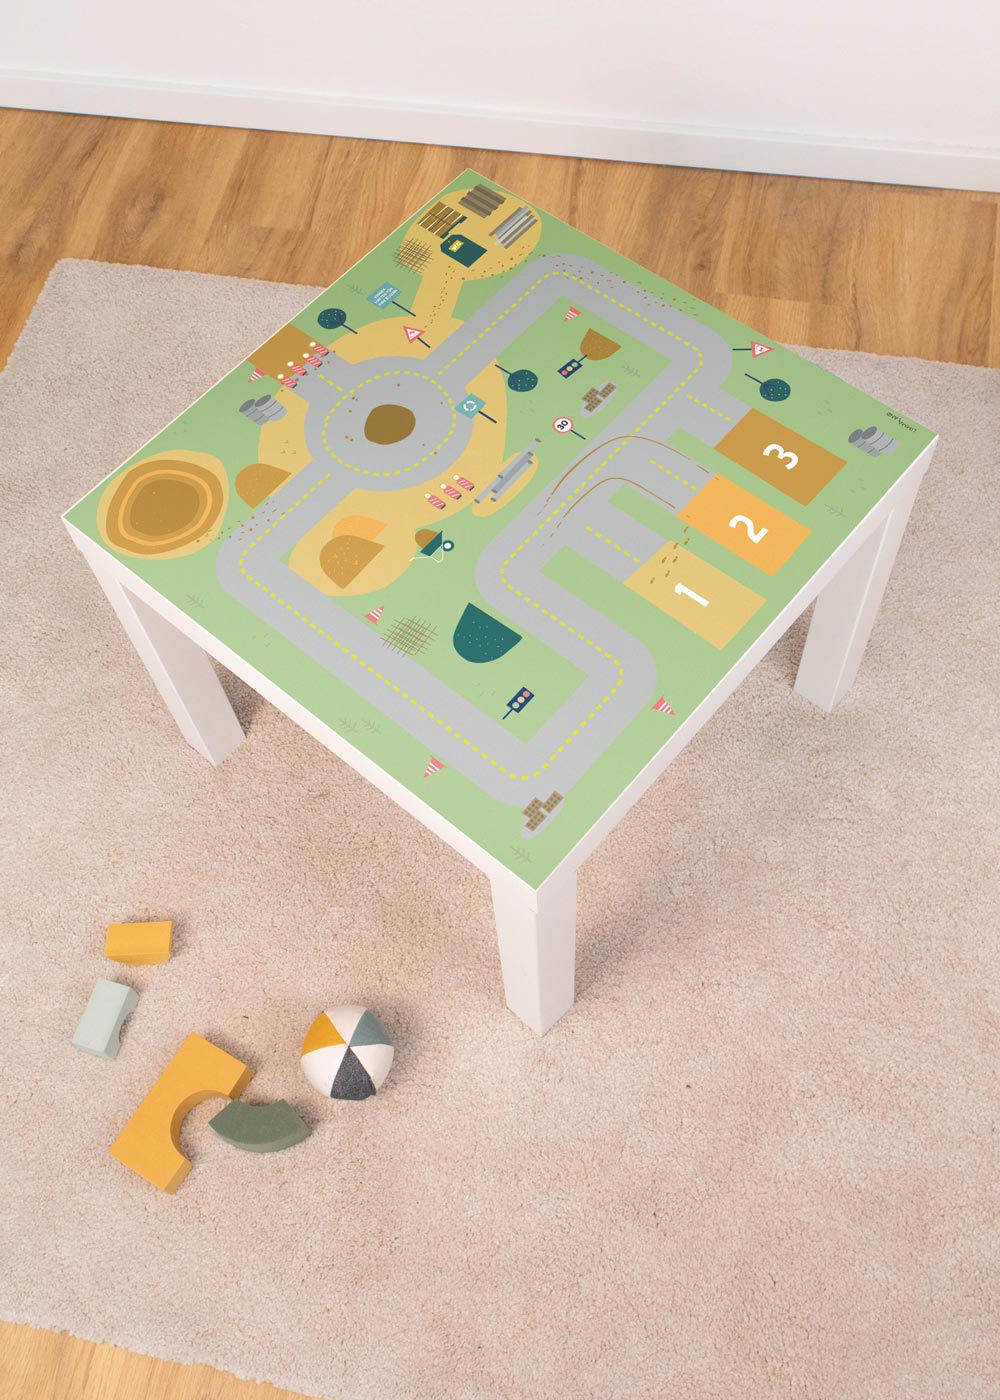 Klebefolie für Ikea Lack Tisch mit Baustelle Motiv